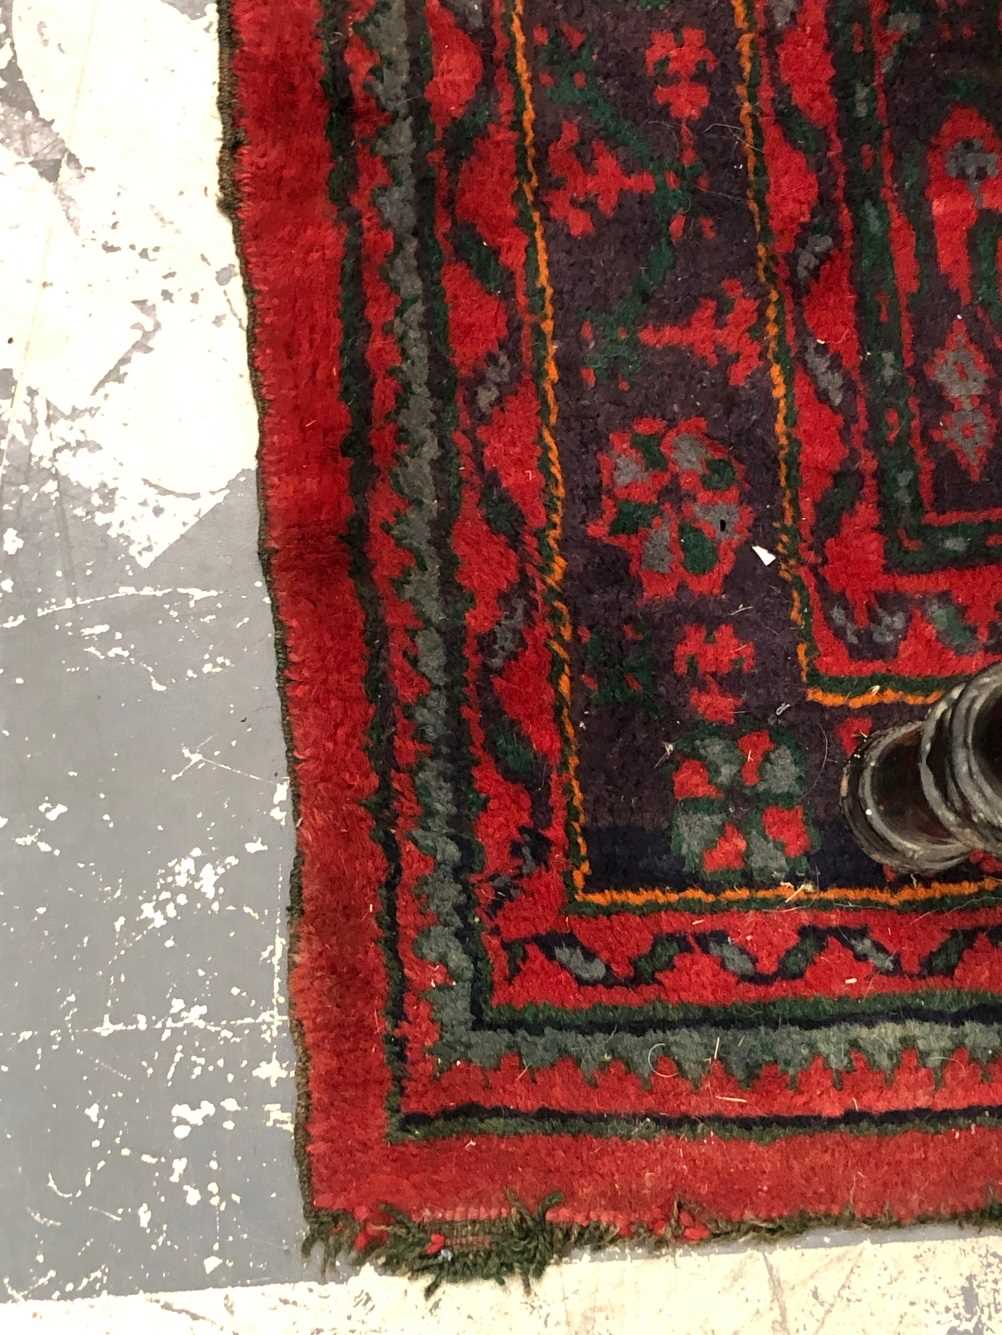 Turkish Oushak rug Measurements 264 x 188cms. - Image 9 of 18